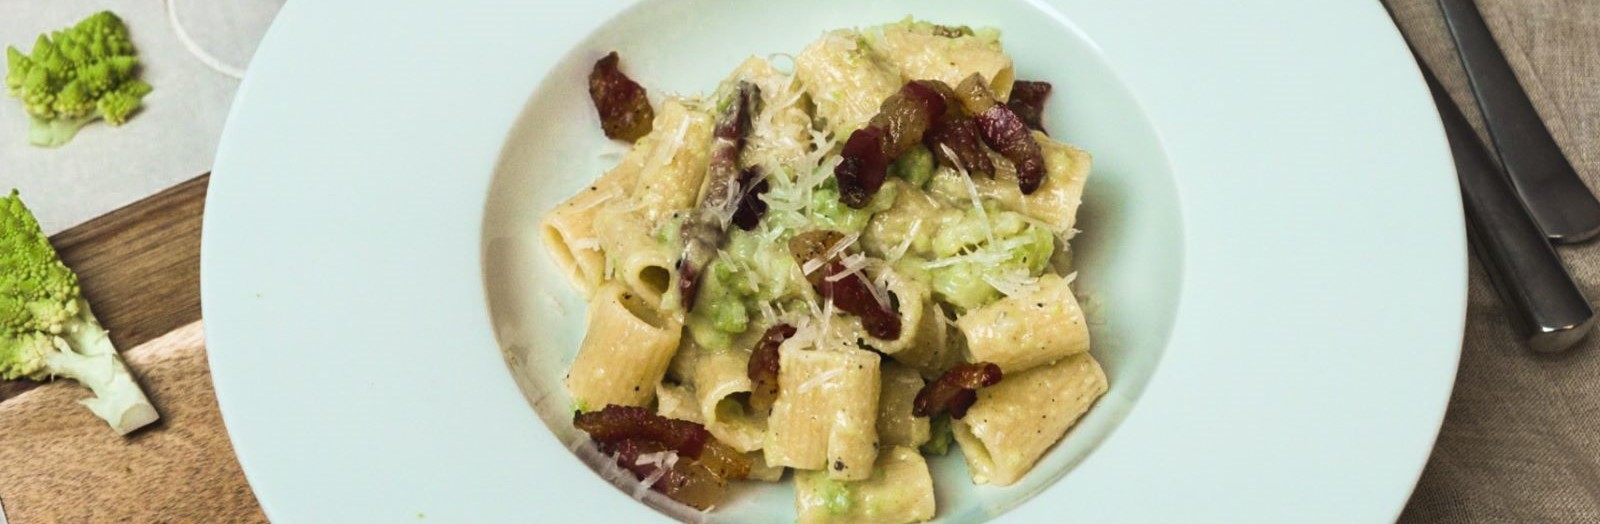 Pasta Garofalo - Mezze Maniche med romanesco-broccoli och guanciale